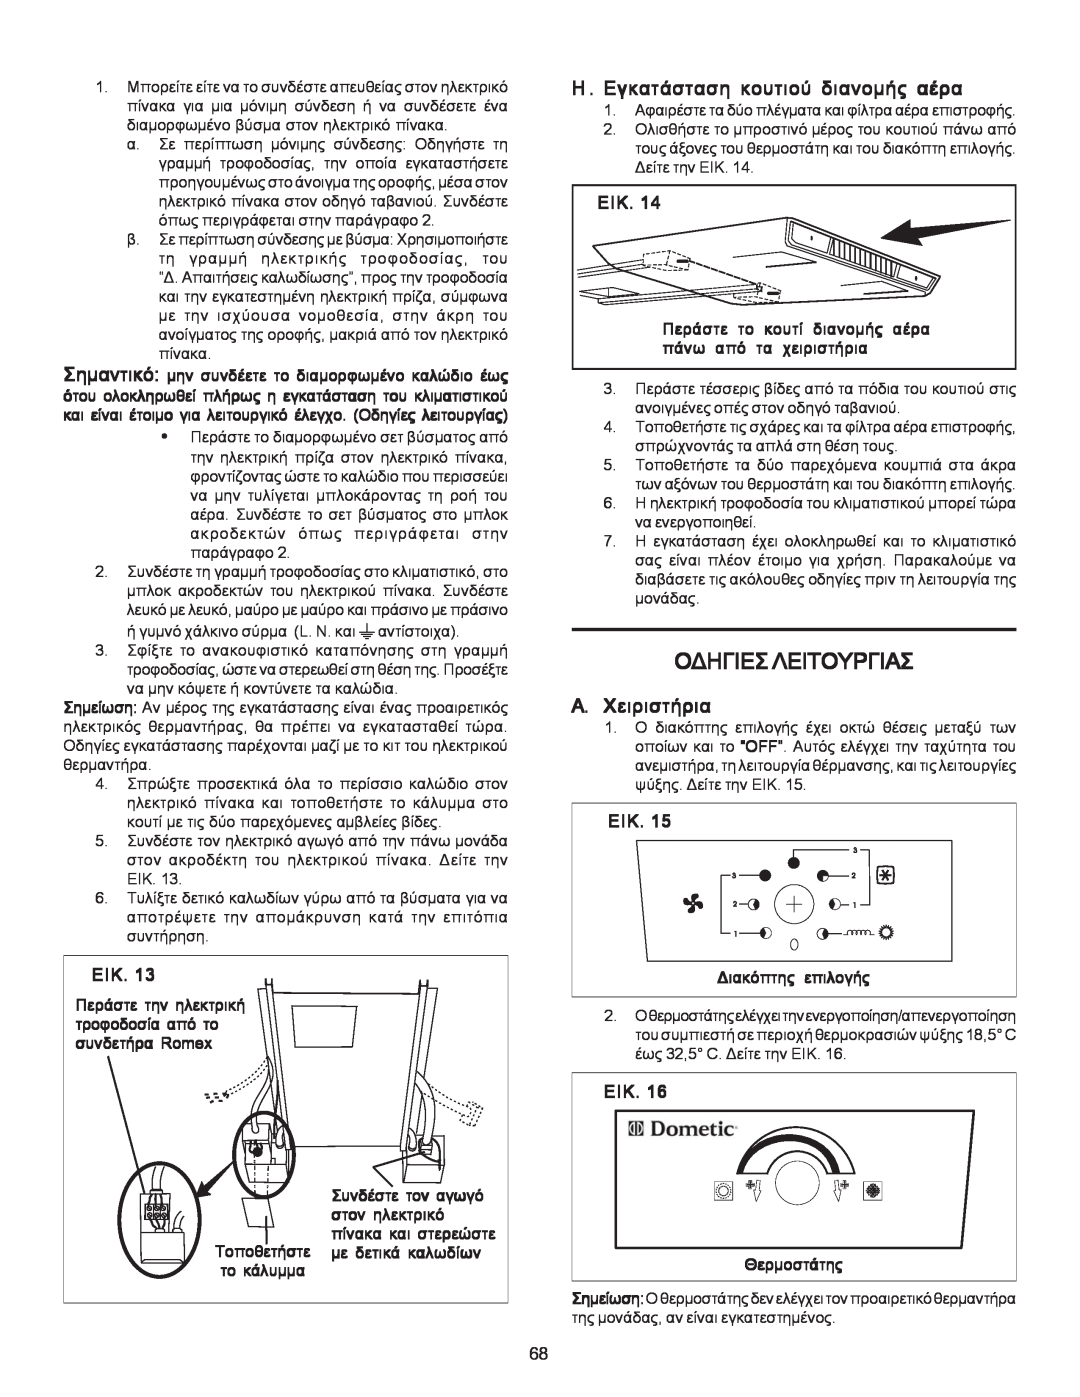 Dometic B3200 manual Ïäçãéåóëåéôïõñãéáó, Åéê, Åik 